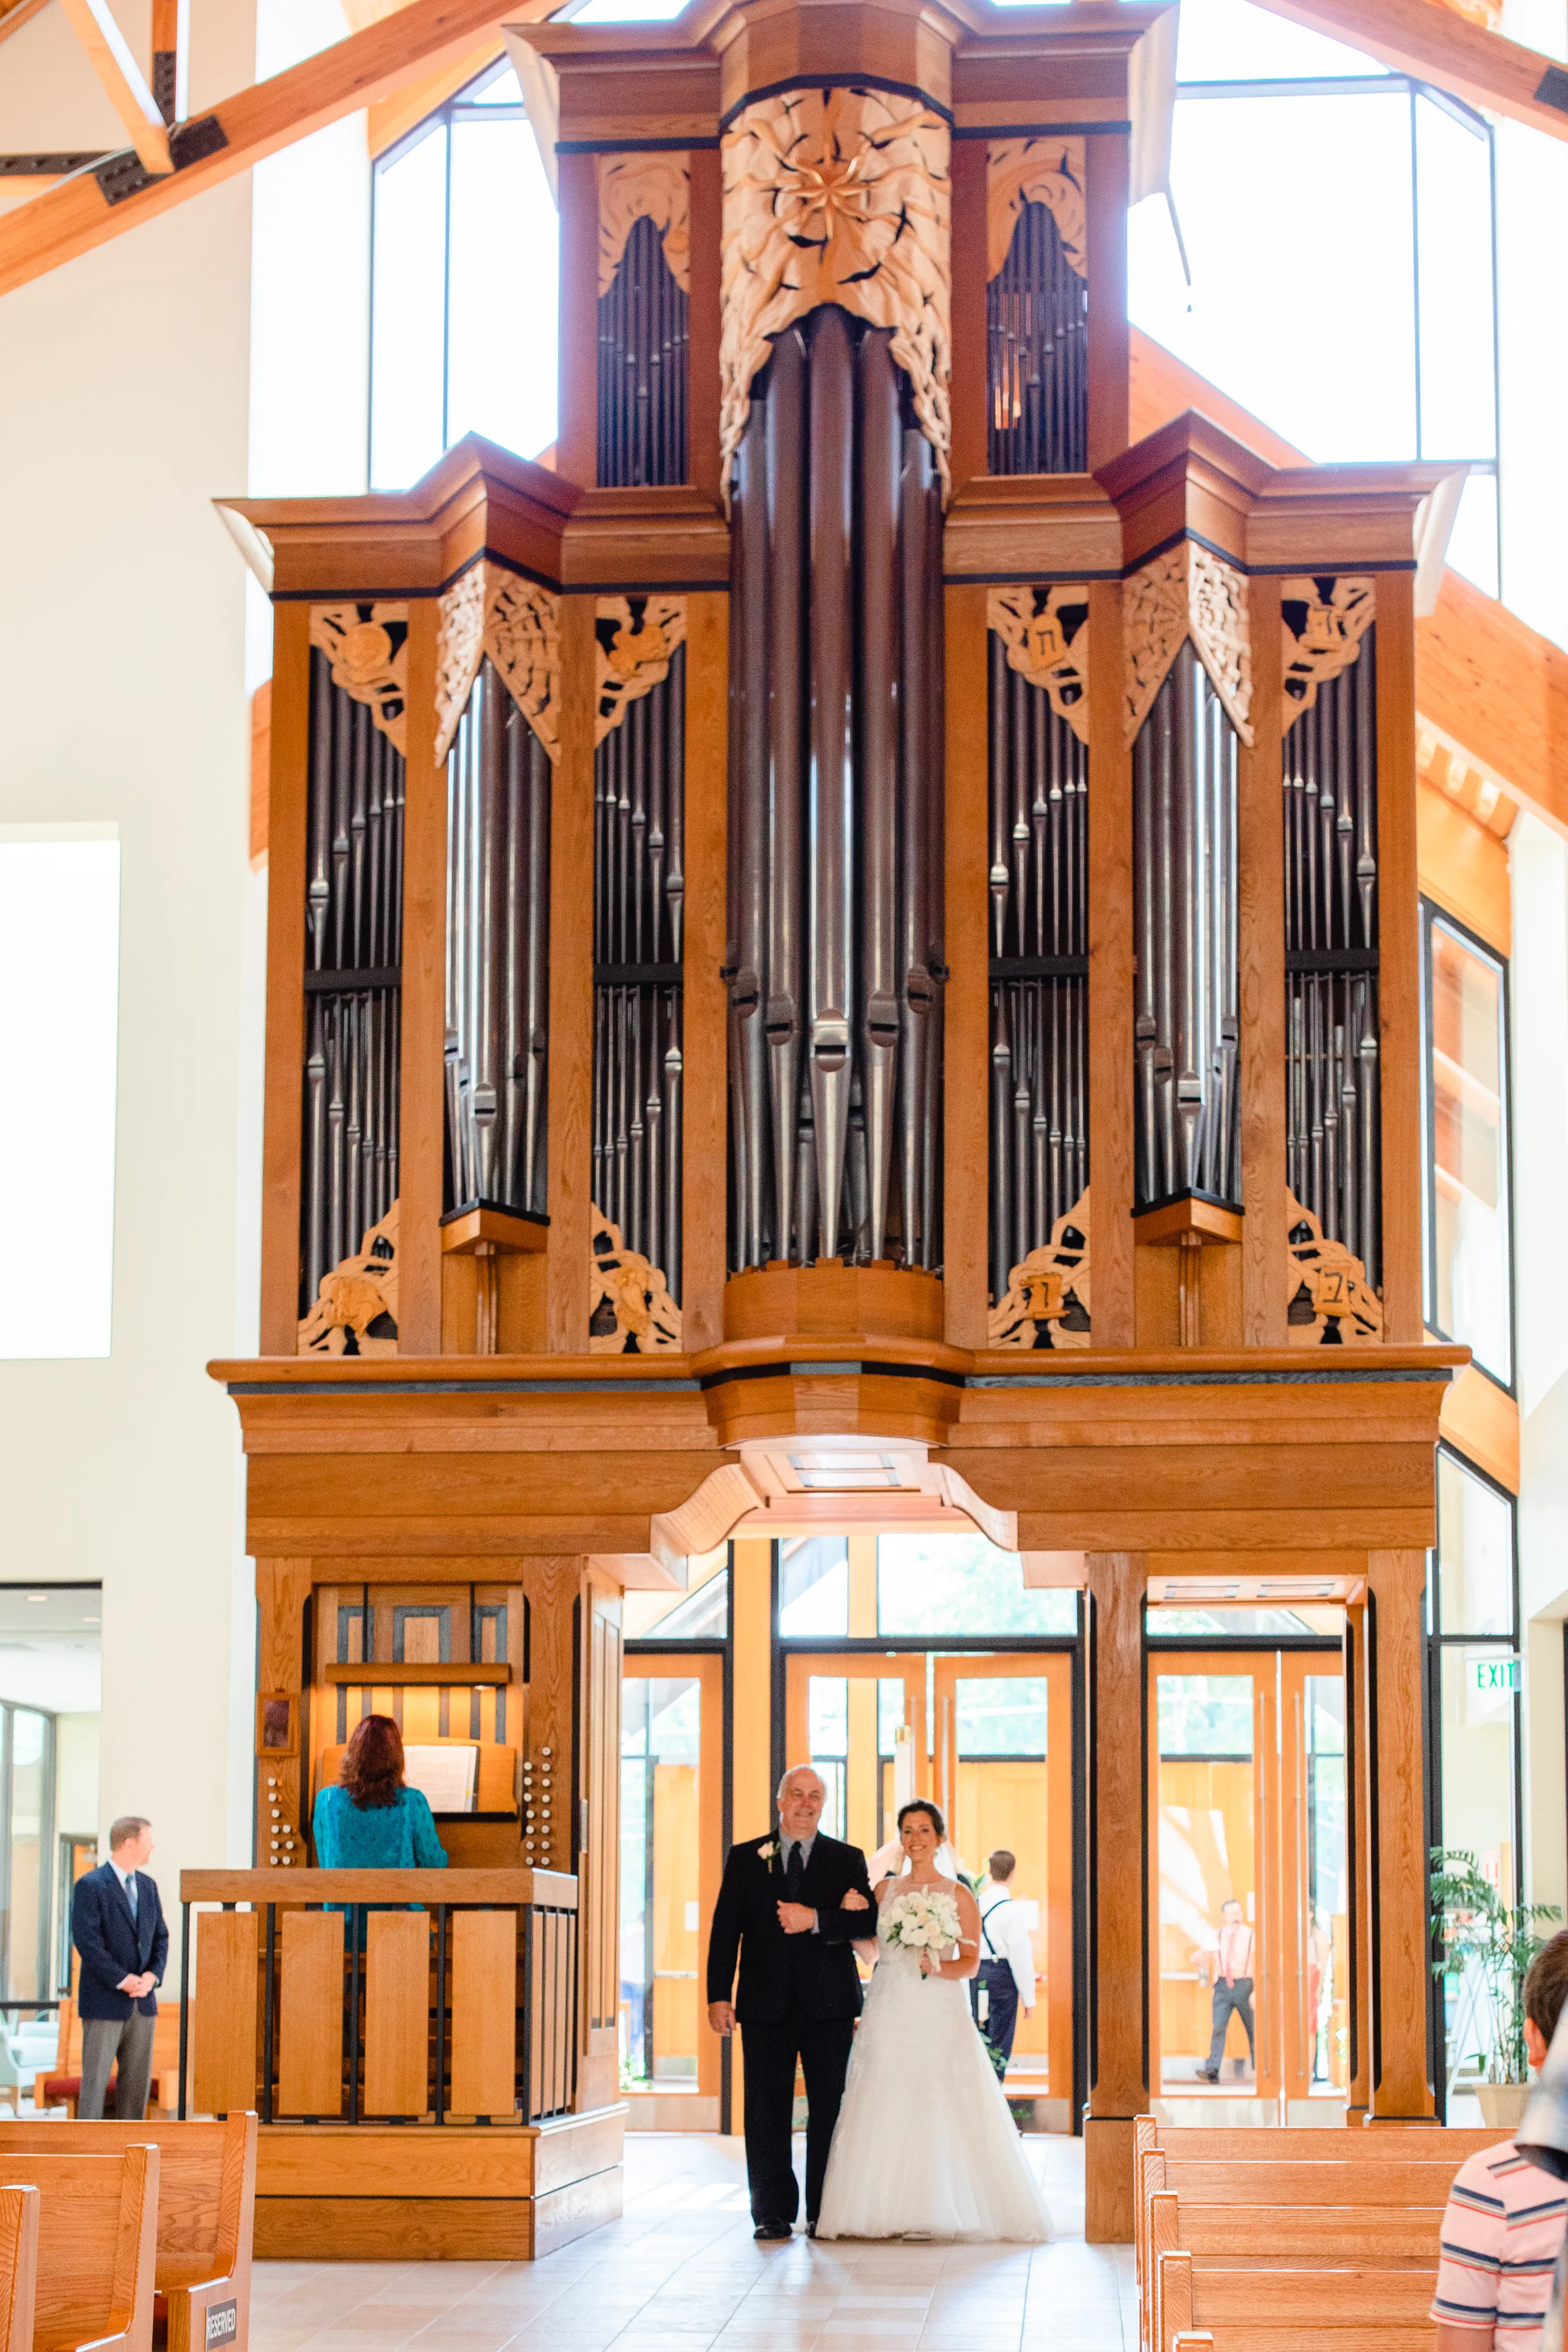 The organ at Holy Angels parish in Bashor Kansas. Photo courtesy of Father Richard McDonald, pastor of Holy Angels Parish, Basehor, Kansas.